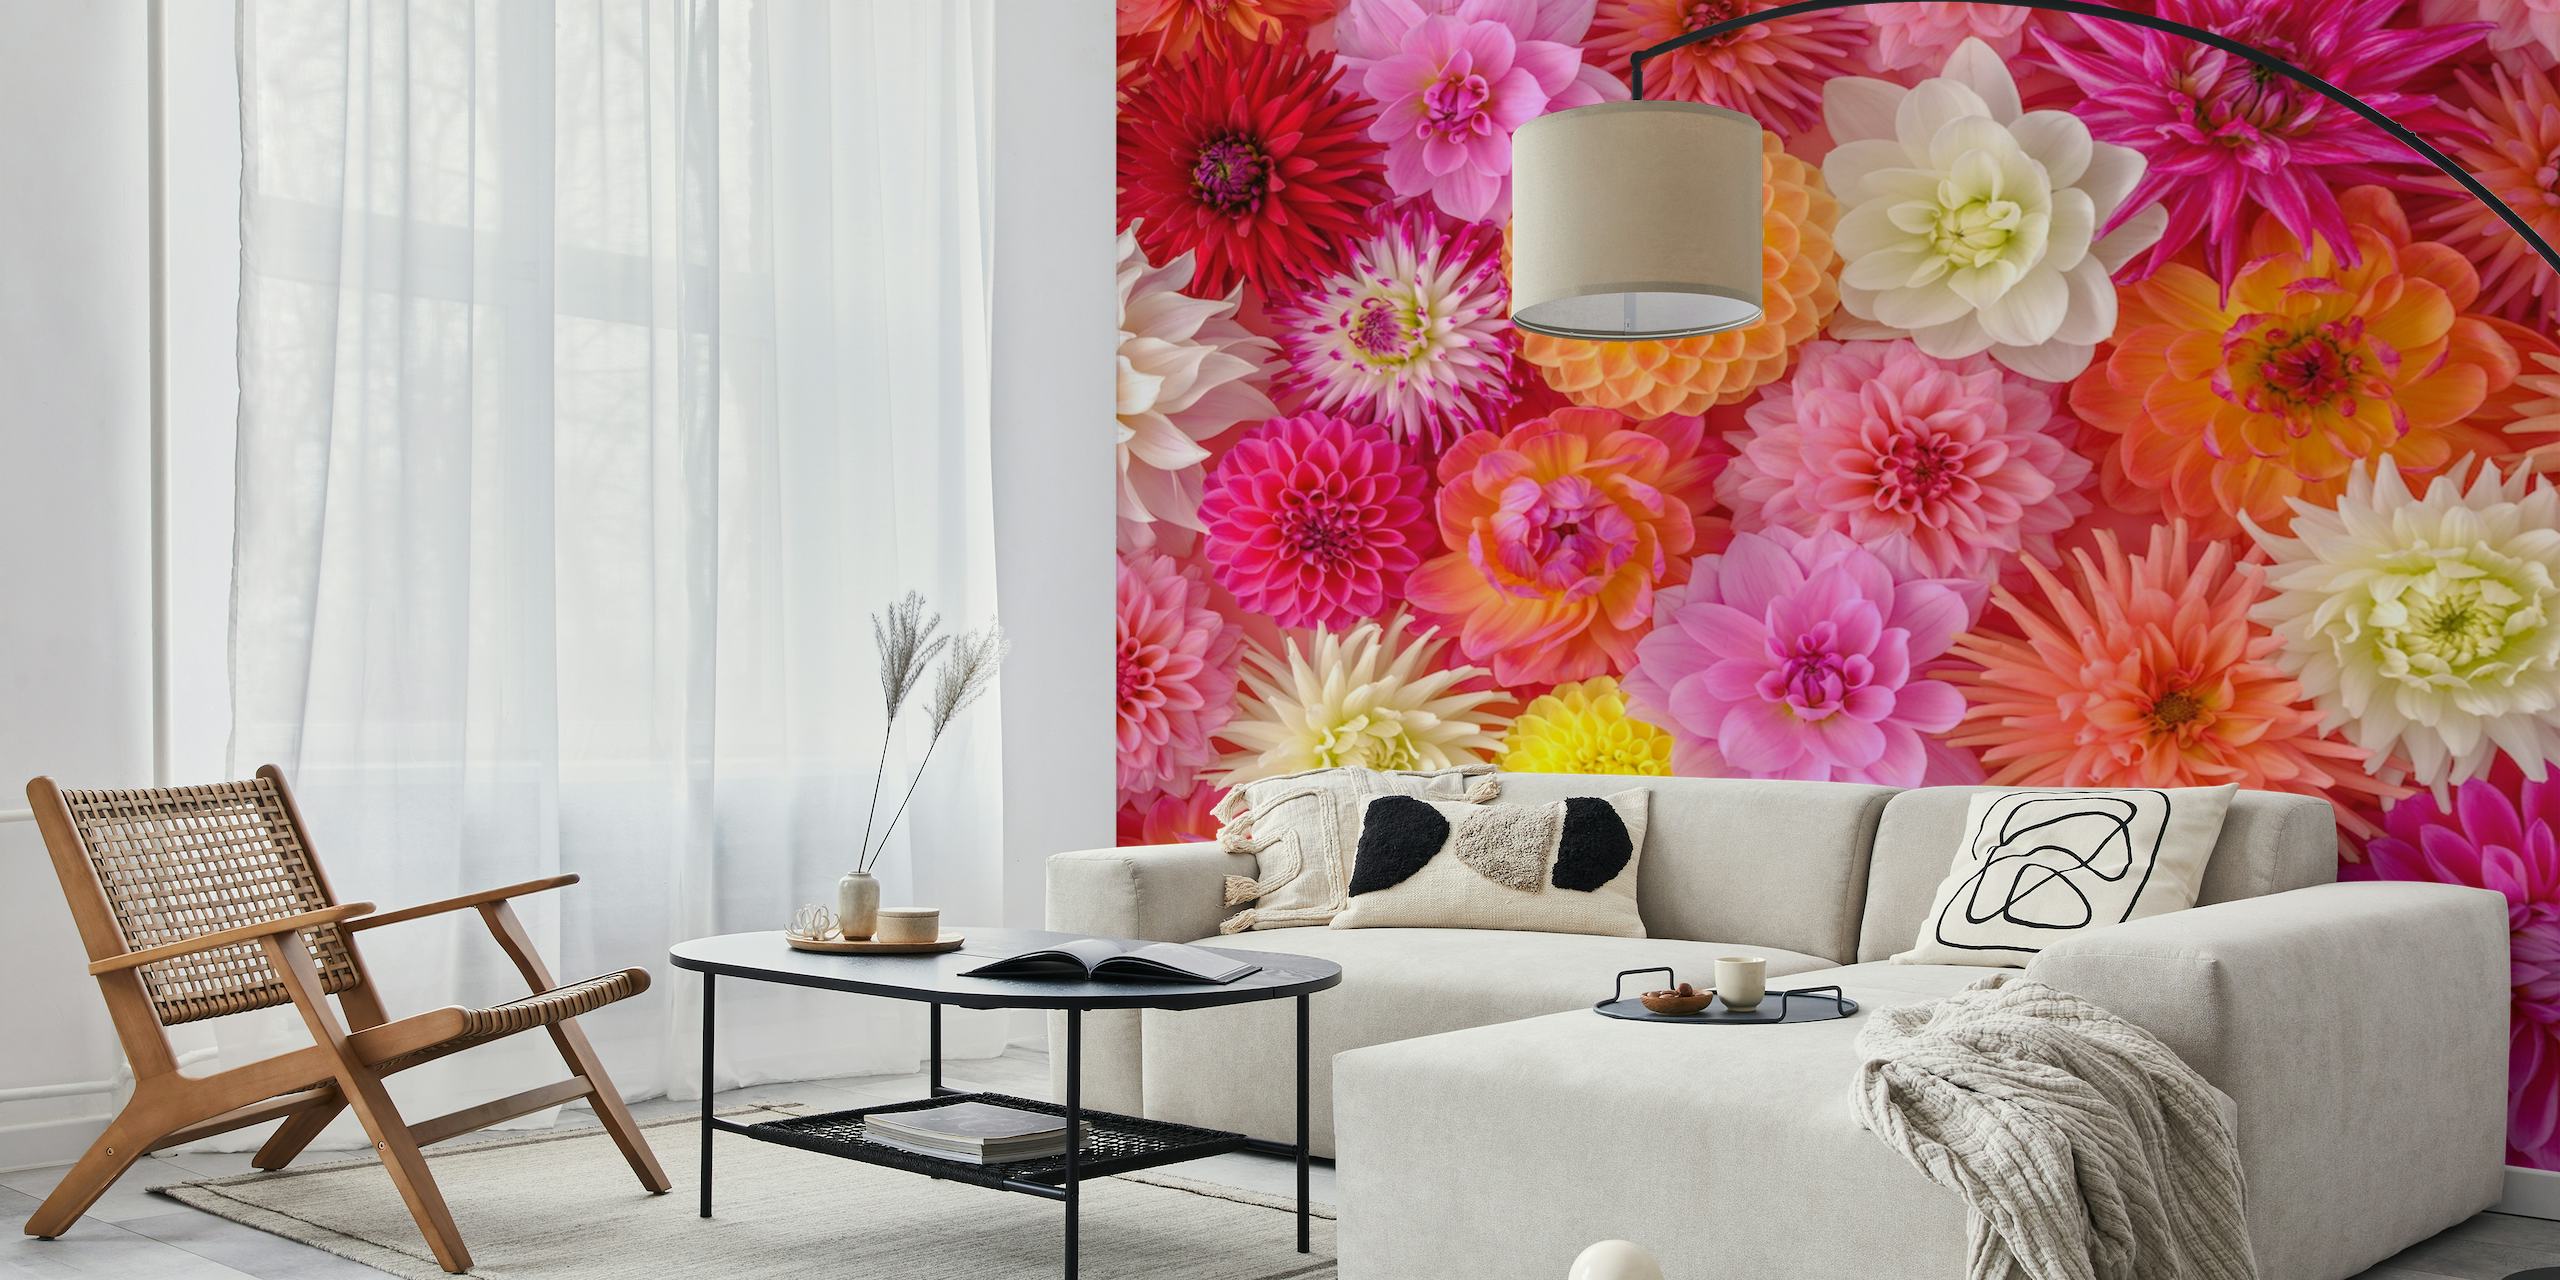 Murale floreale colorato con un miscuglio di fiori in rosa e bianchi